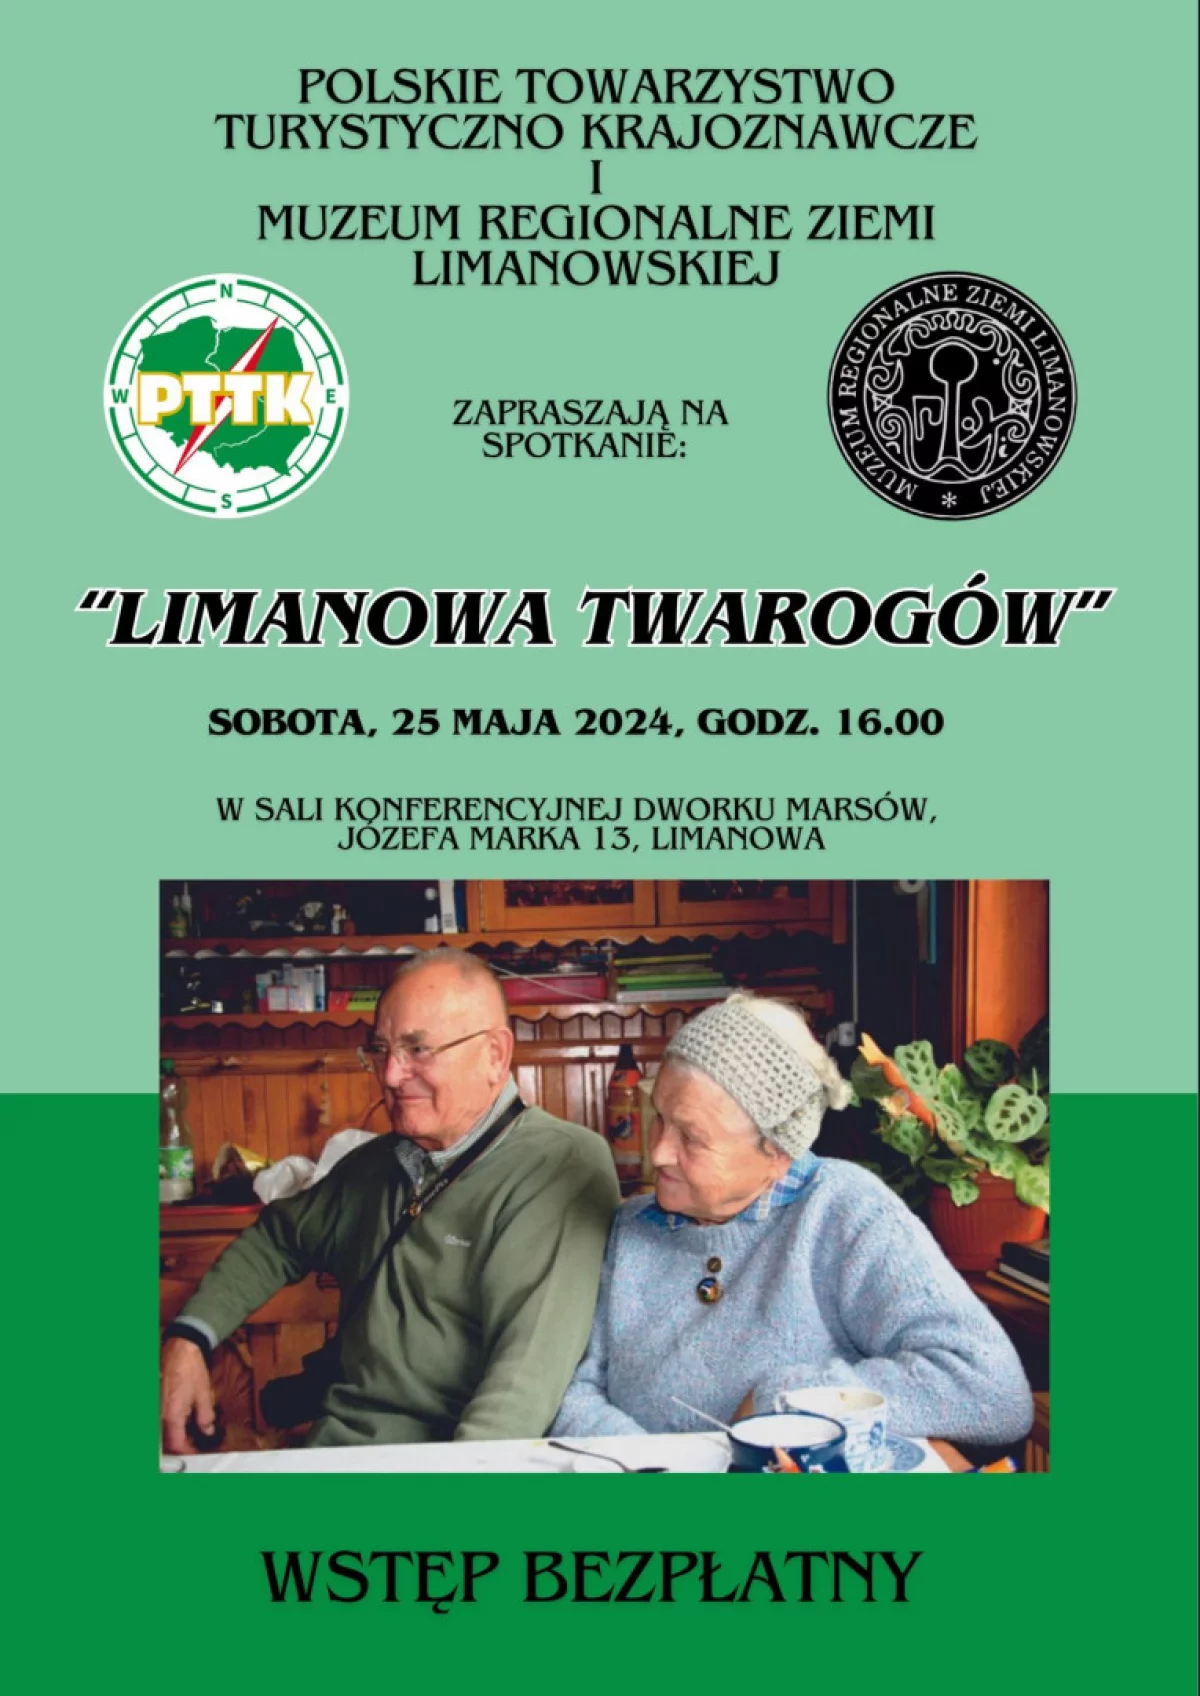 Zaproszenie na spotkanie „Limanowa Twarogów” w Muzeum Regionalnym Ziemi Limanowskiej